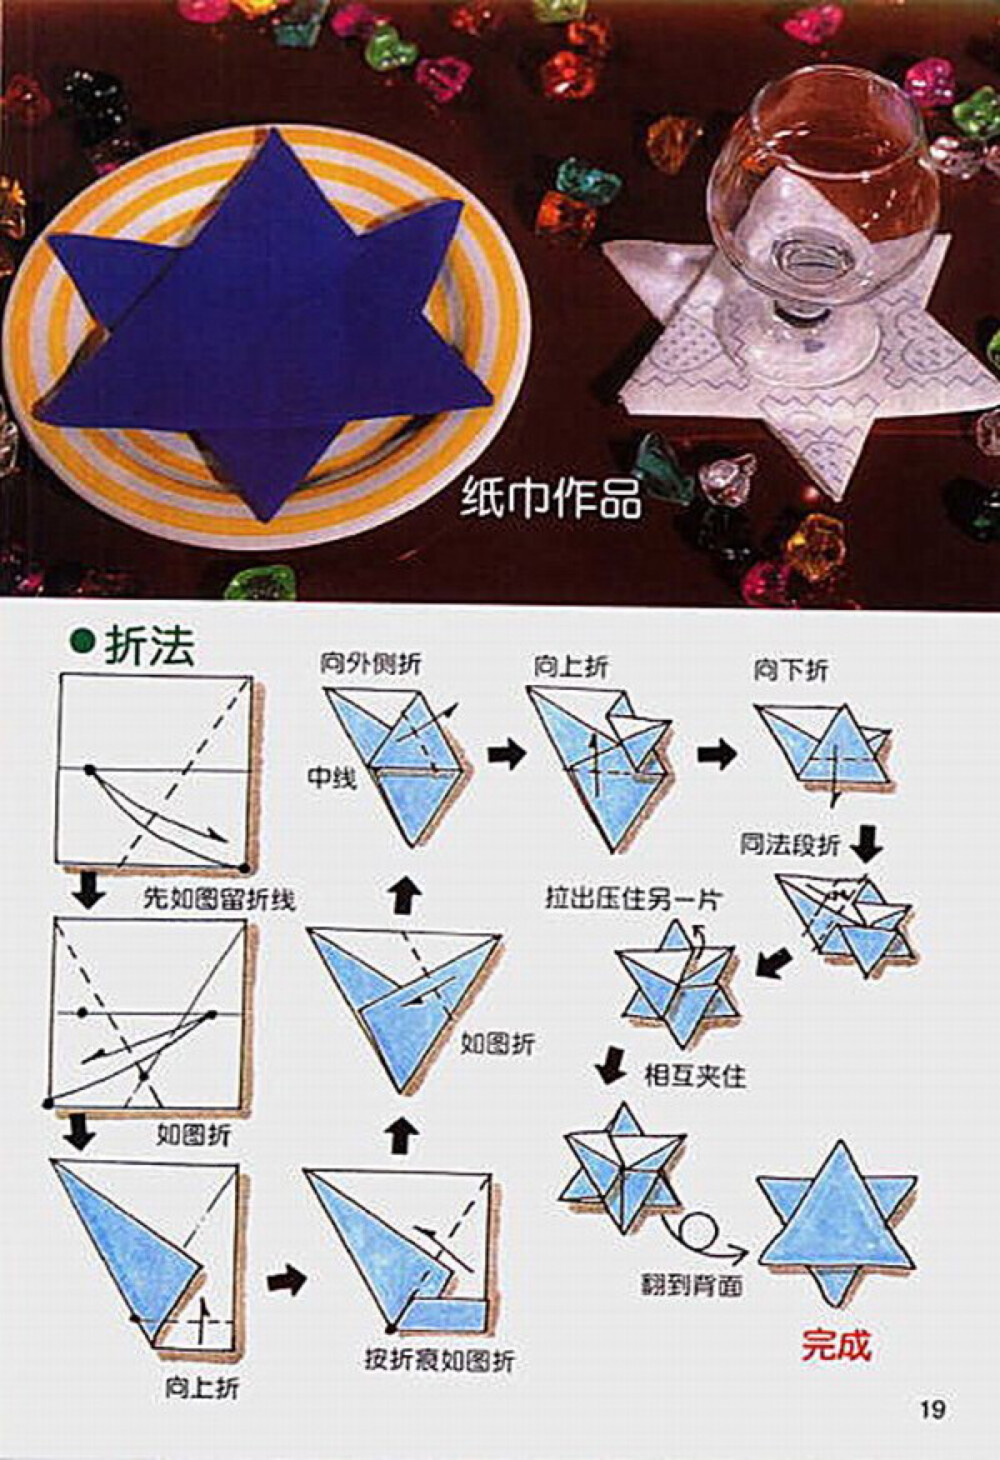 餐厅口布/餐巾/毛巾/手帕创意折叠:五角星